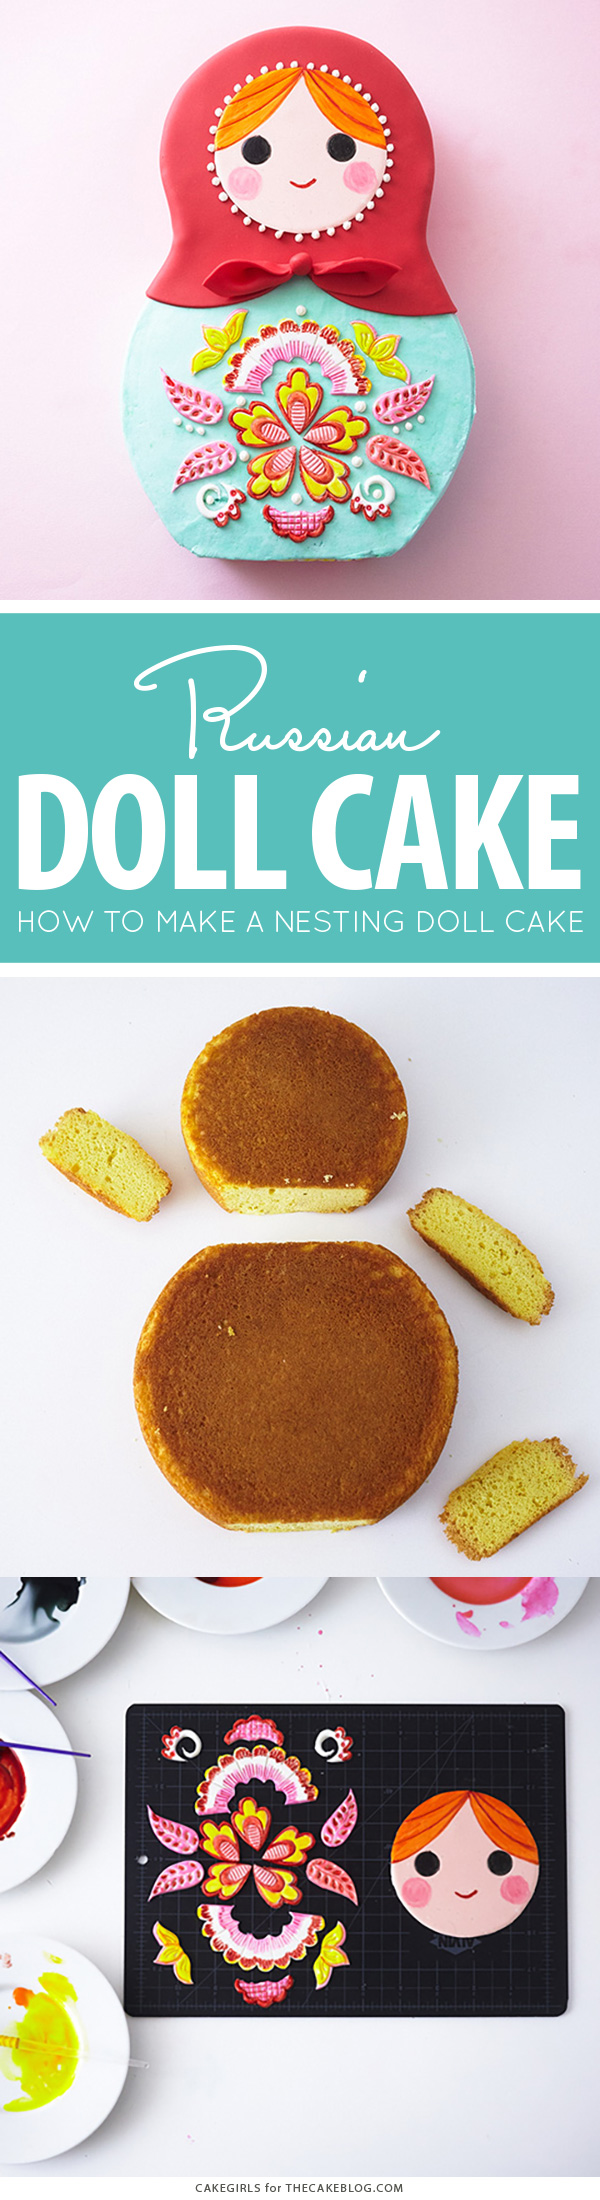 How to make a Russian nesting doll cake | by Cakegirls for TheCakeBlog.com